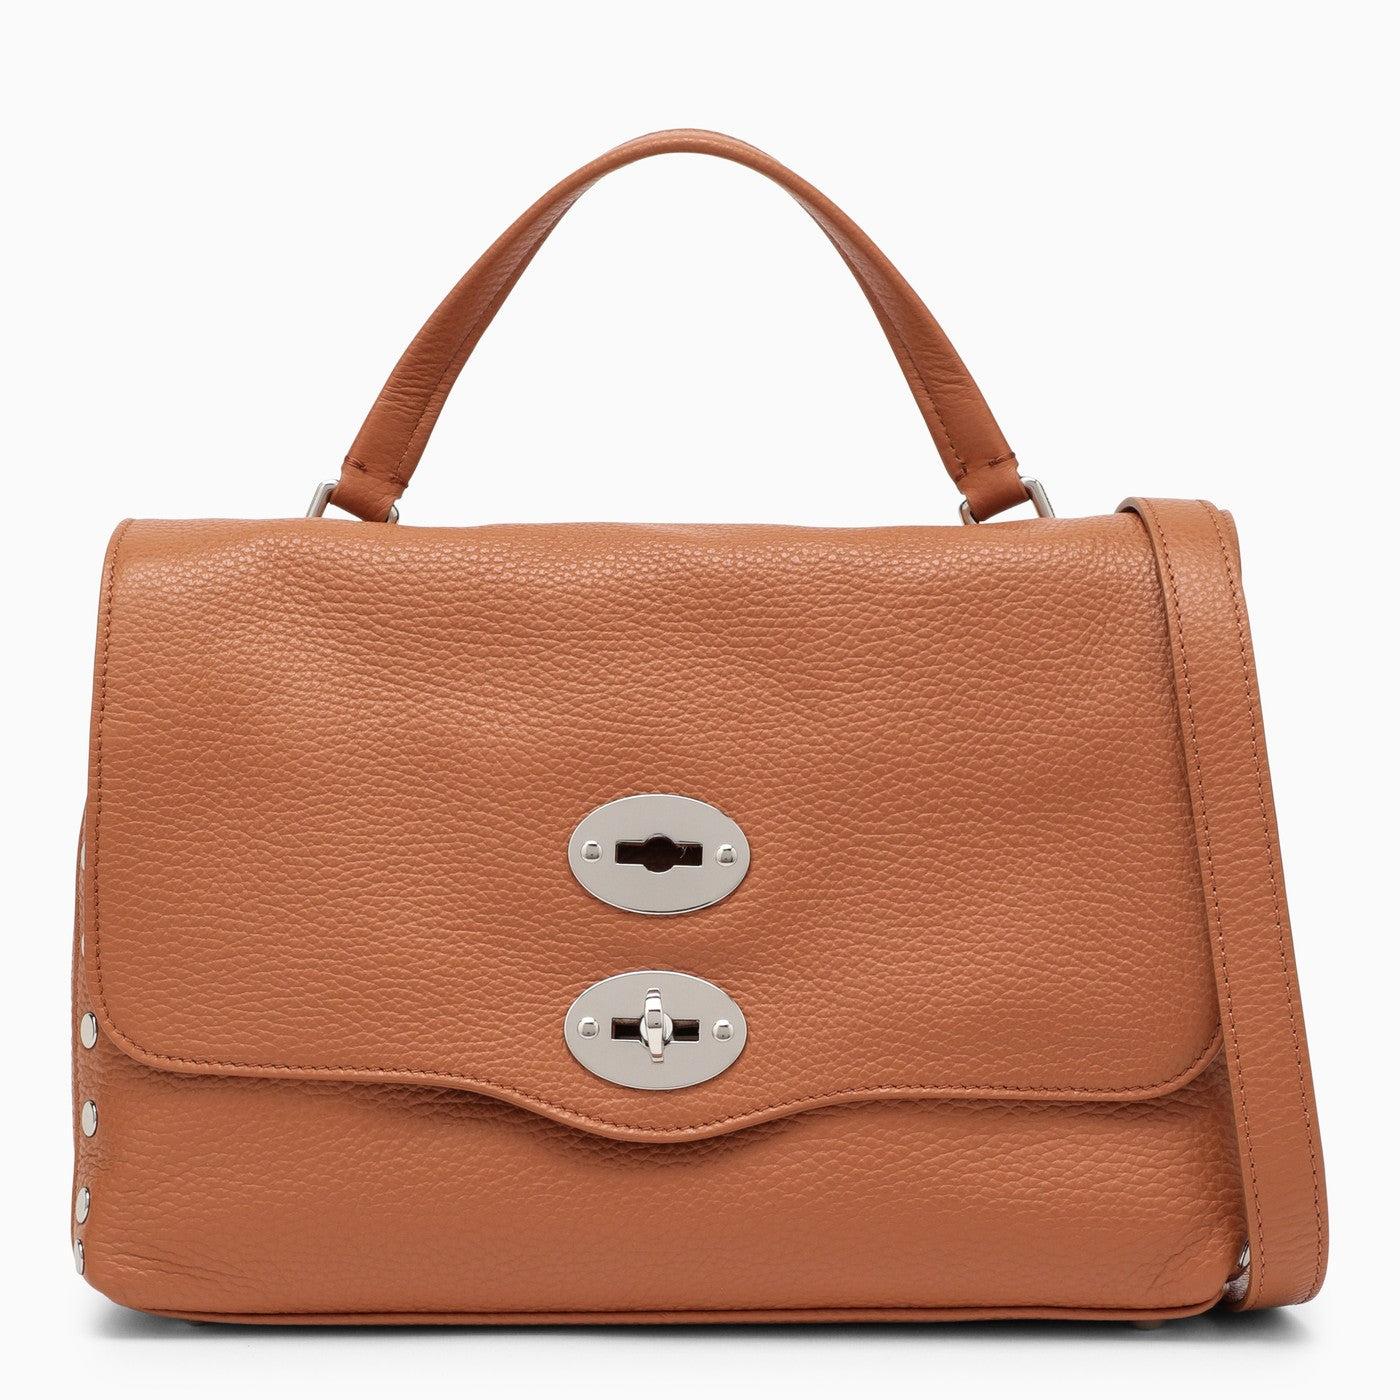 Bottega Veneta Bags for Women | Online Sale up to 75% off | Lyst